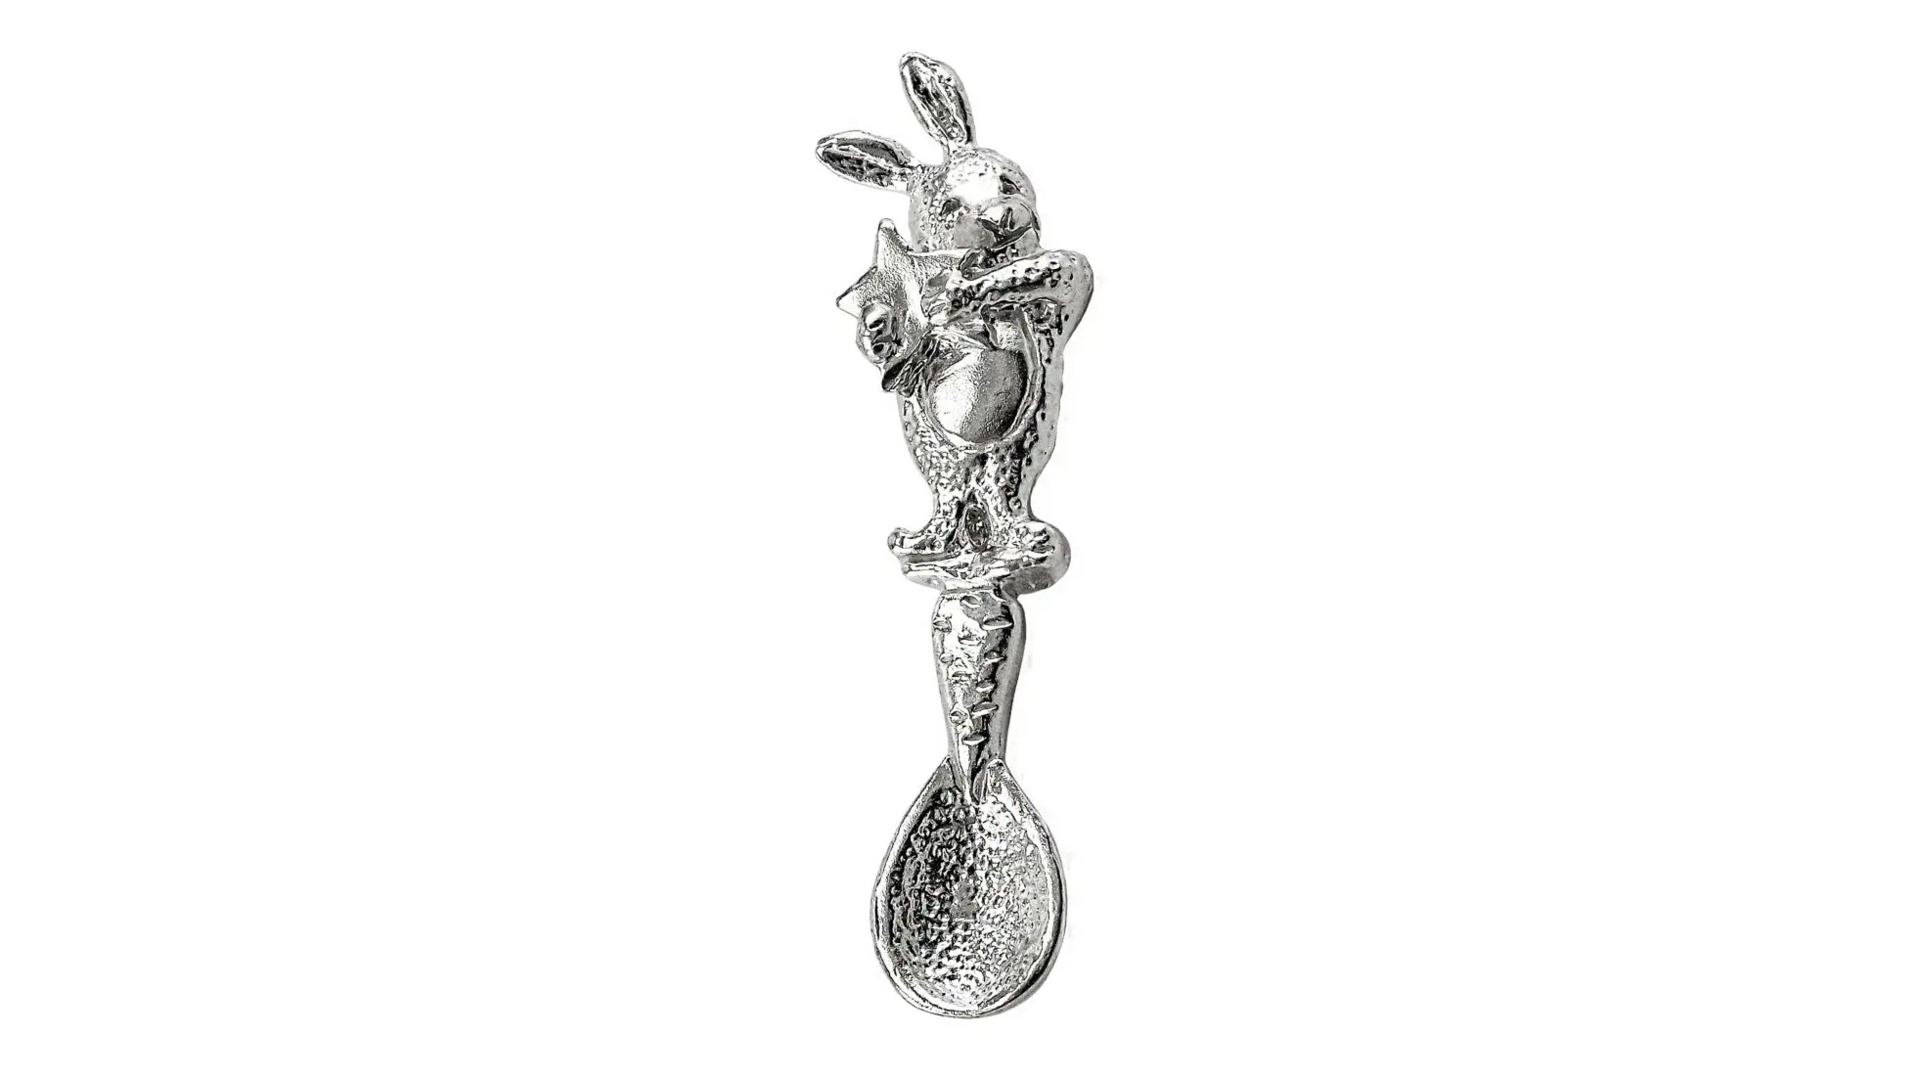 Ложка сувенирная АргентА Кролик 5,68 г, серебро 925